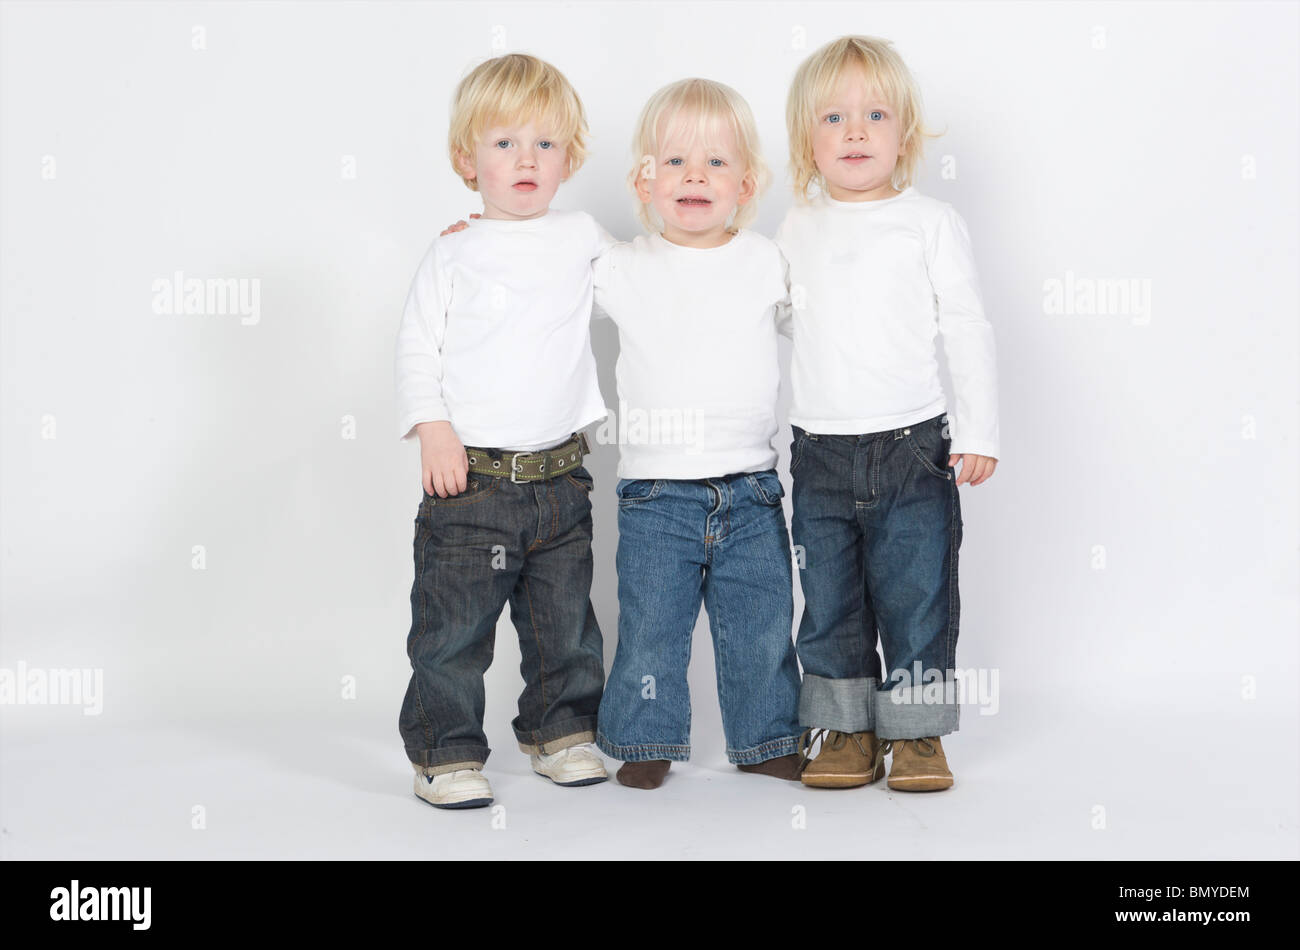 2-3 ans 3-4 ans blonde attitude bleu garçon caucasien enfant ethnie ethnique néerlandais enfants europa europe european eye frien Banque D'Images